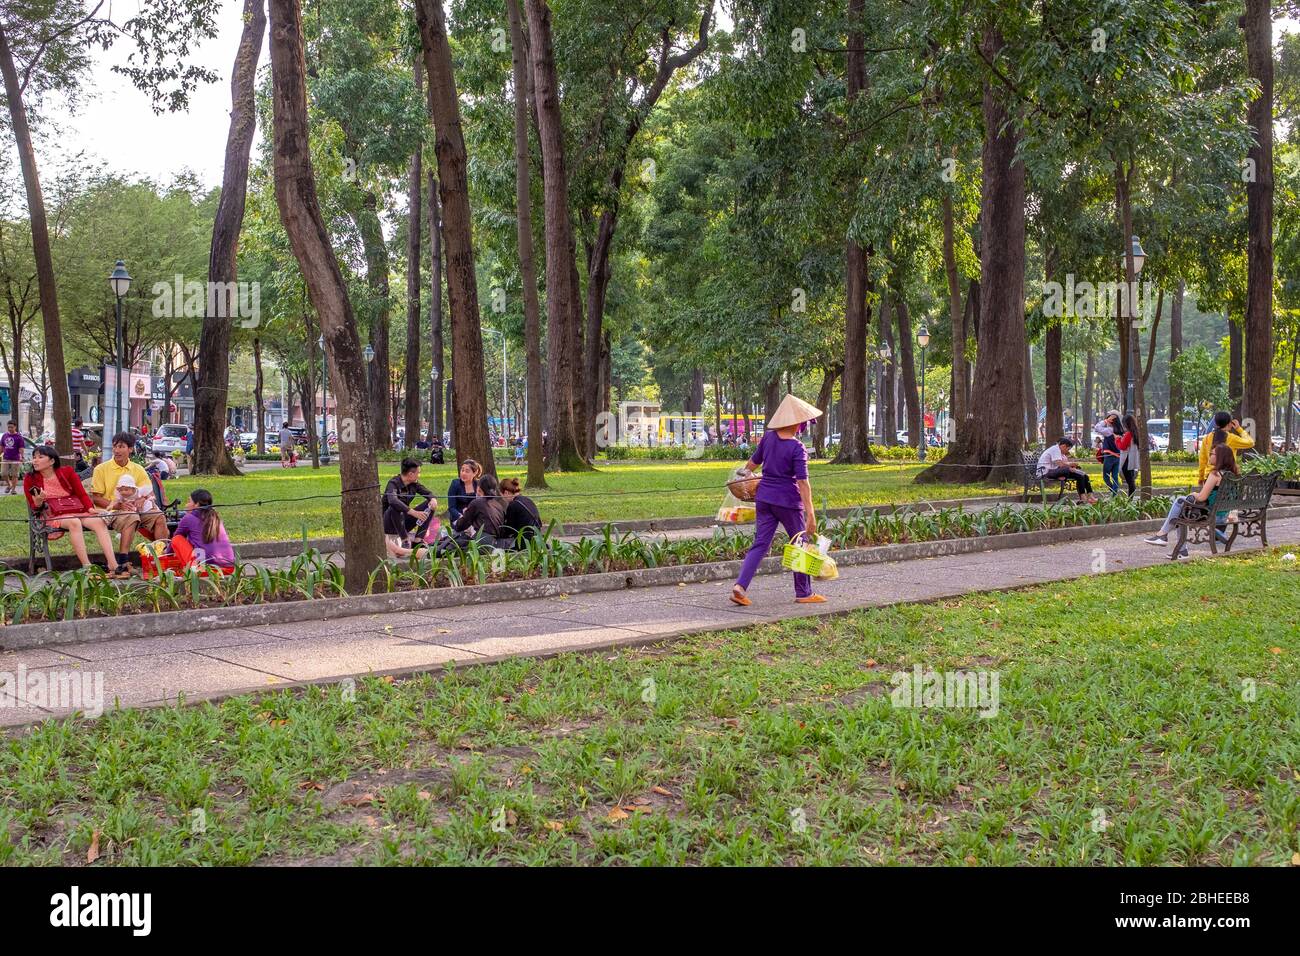 Ciudad Ho Chi Minh, Vietnam - 7 de abril de 2018: Varios lugareños están disfrutando paseando y sentados en un parque a última hora de la tarde Foto de stock